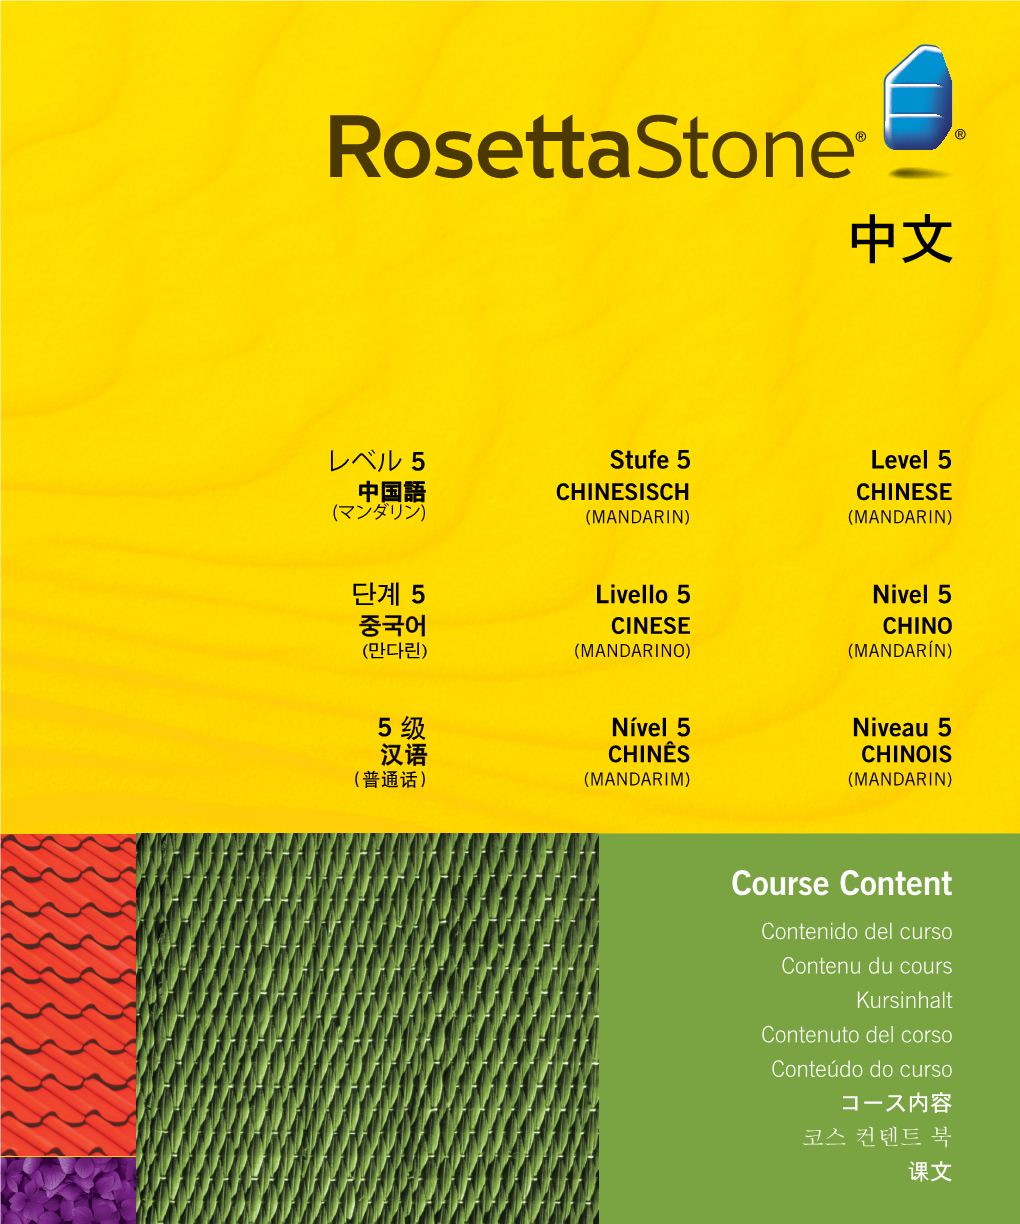 Course Content Course Content